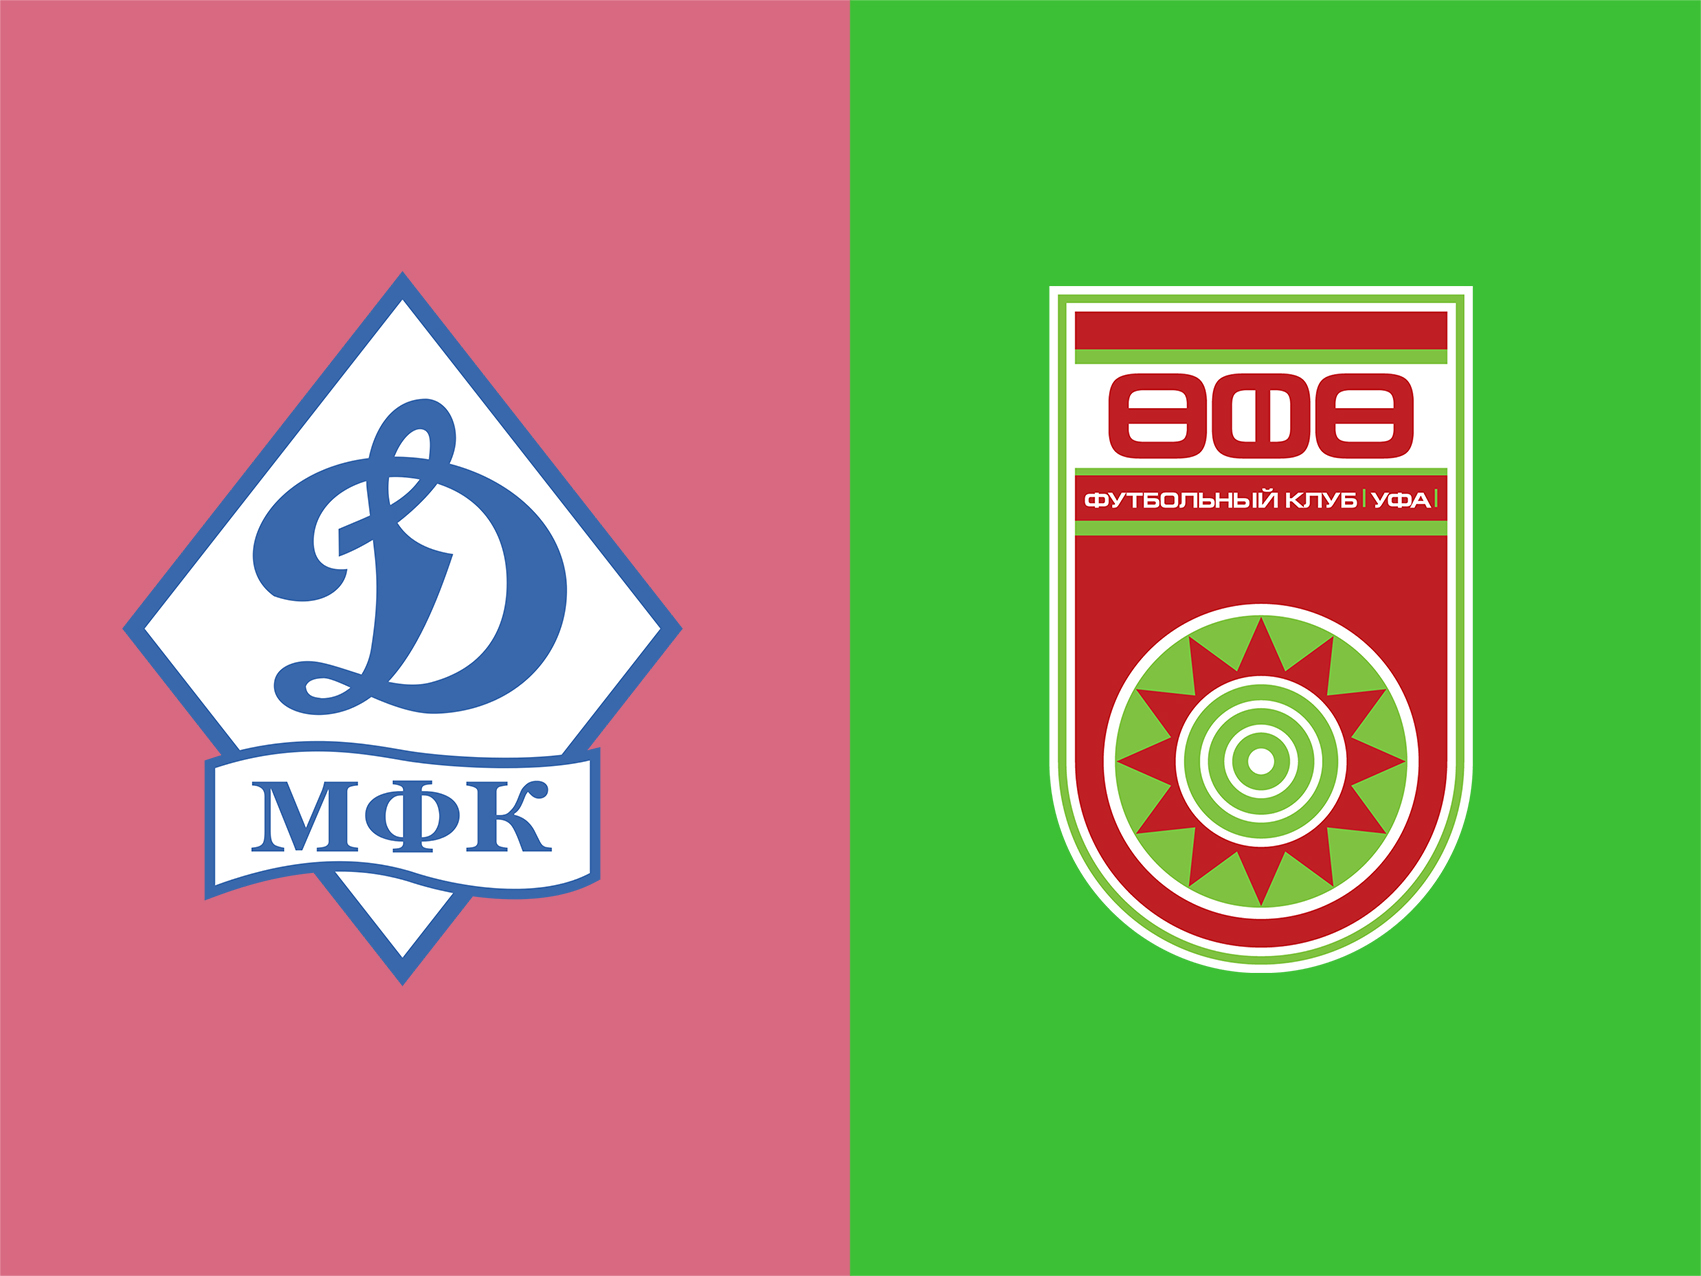 soi-keo-ca-cuoc-bong-da-ngay-14-9-Dinamo Moscow-vs-FC Ufa-do-it-thang-do-nhieu-b9